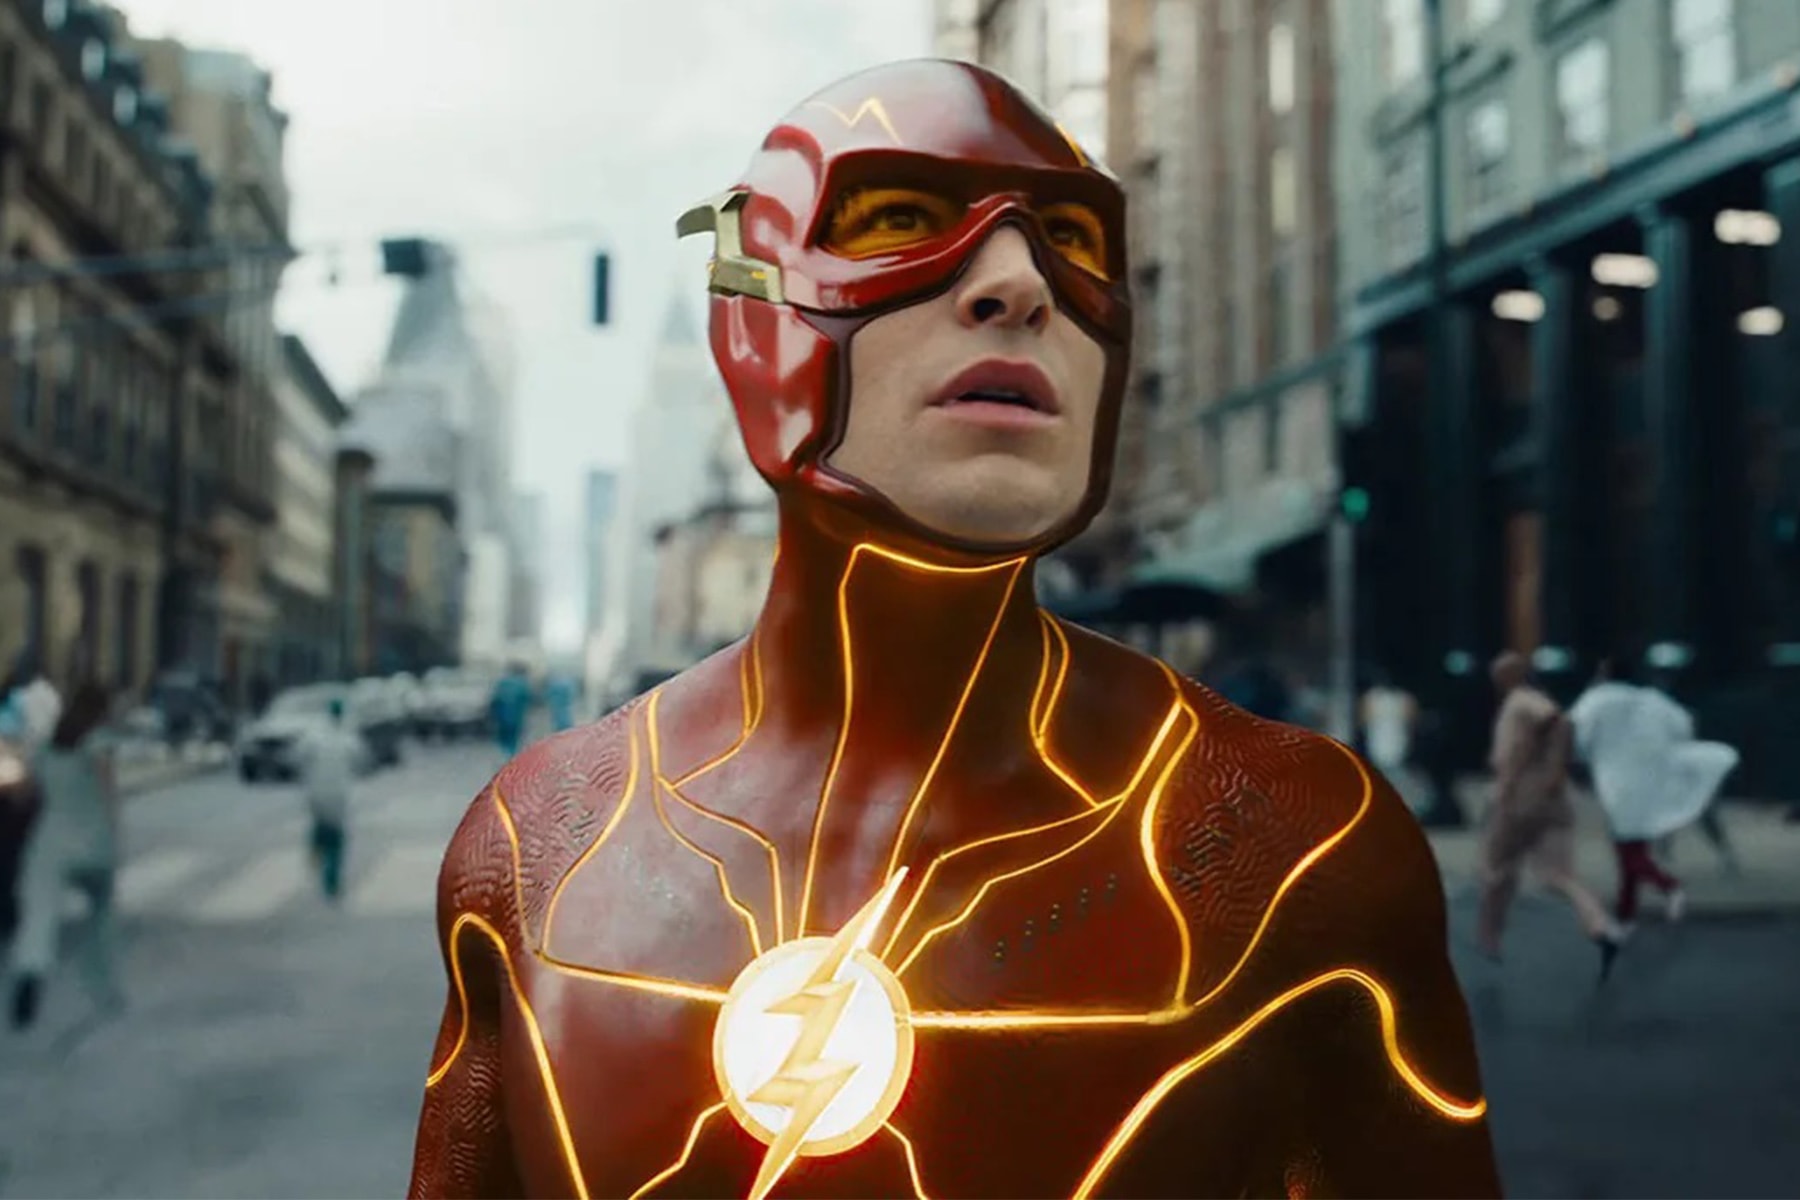 DC 年度英雄大片《閃電俠 The Flash》拍攝成本率先公開